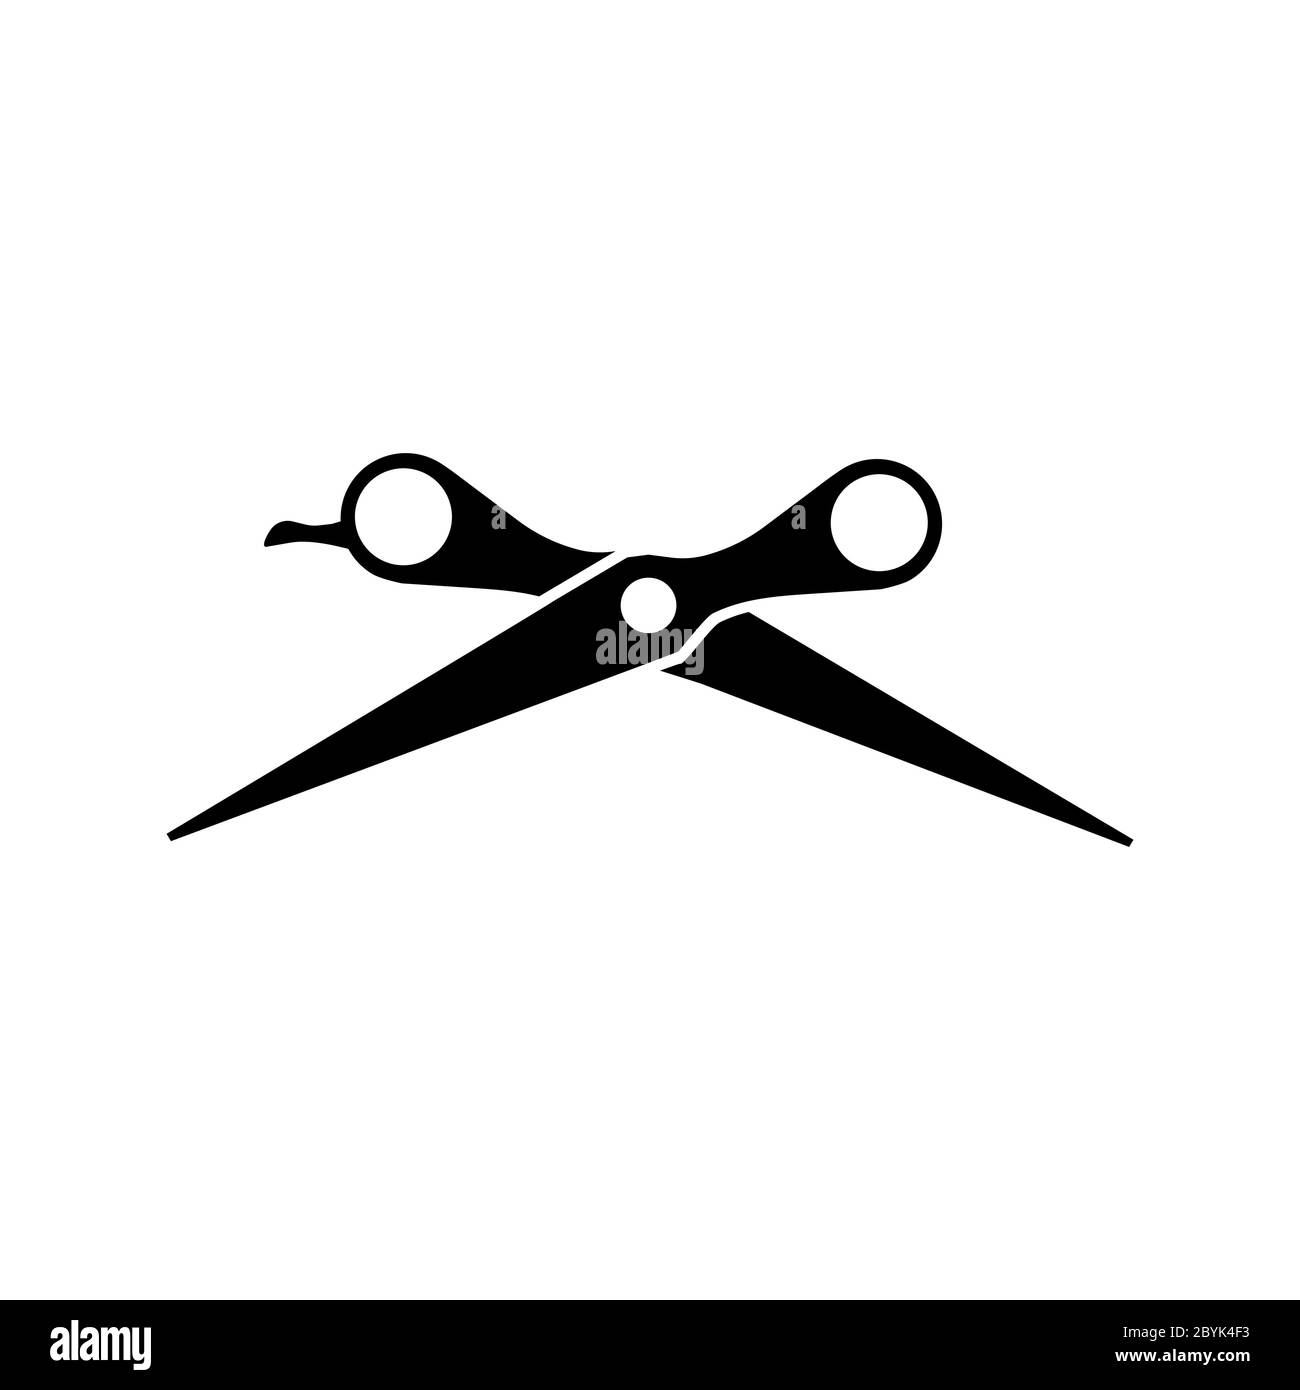 Scissor logo immagini e fotografie stock ad alta risoluzione - Alamy